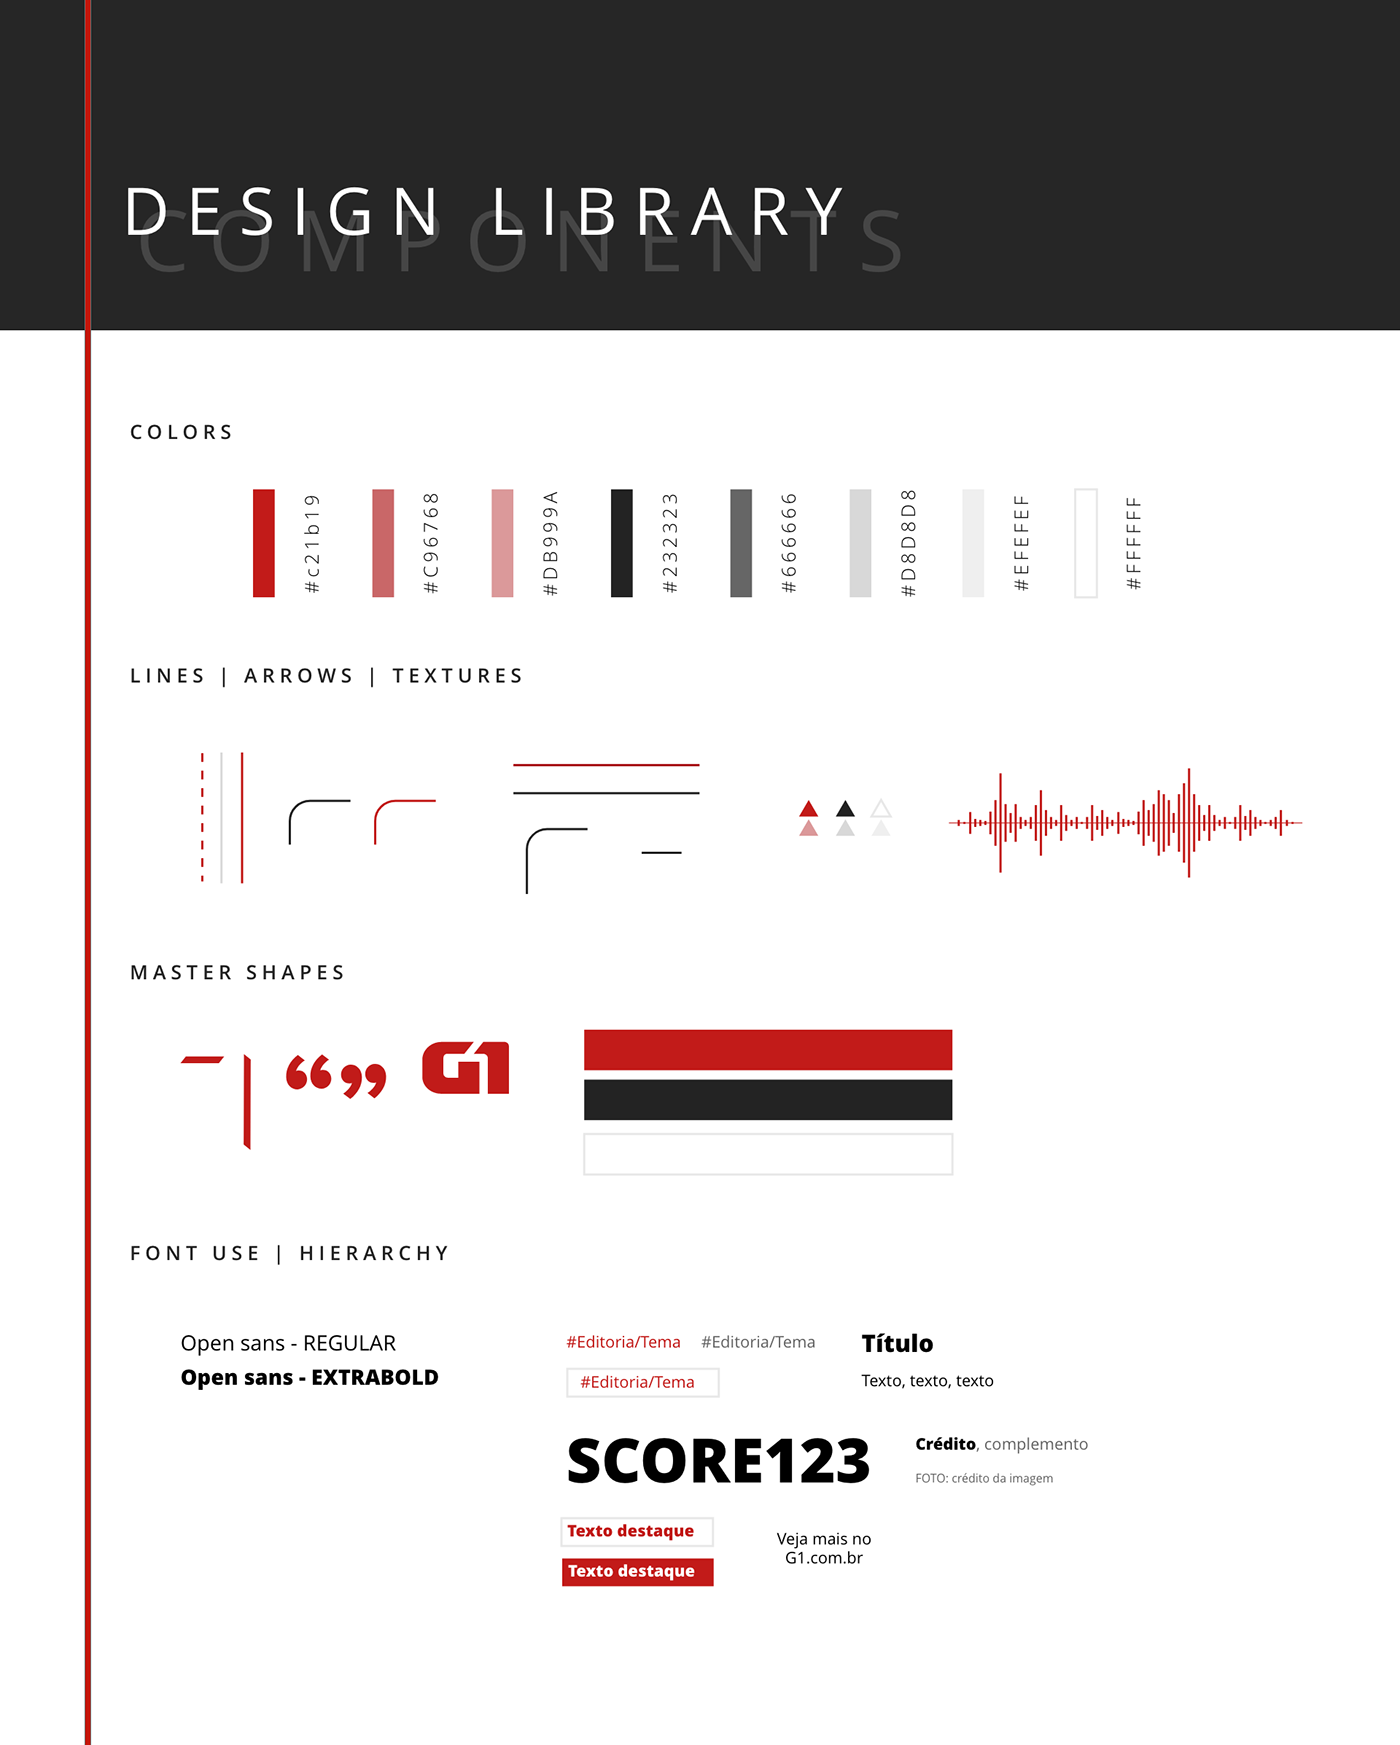 design system digital design g1 mobile newspaper rede globo social media template design UI user interface